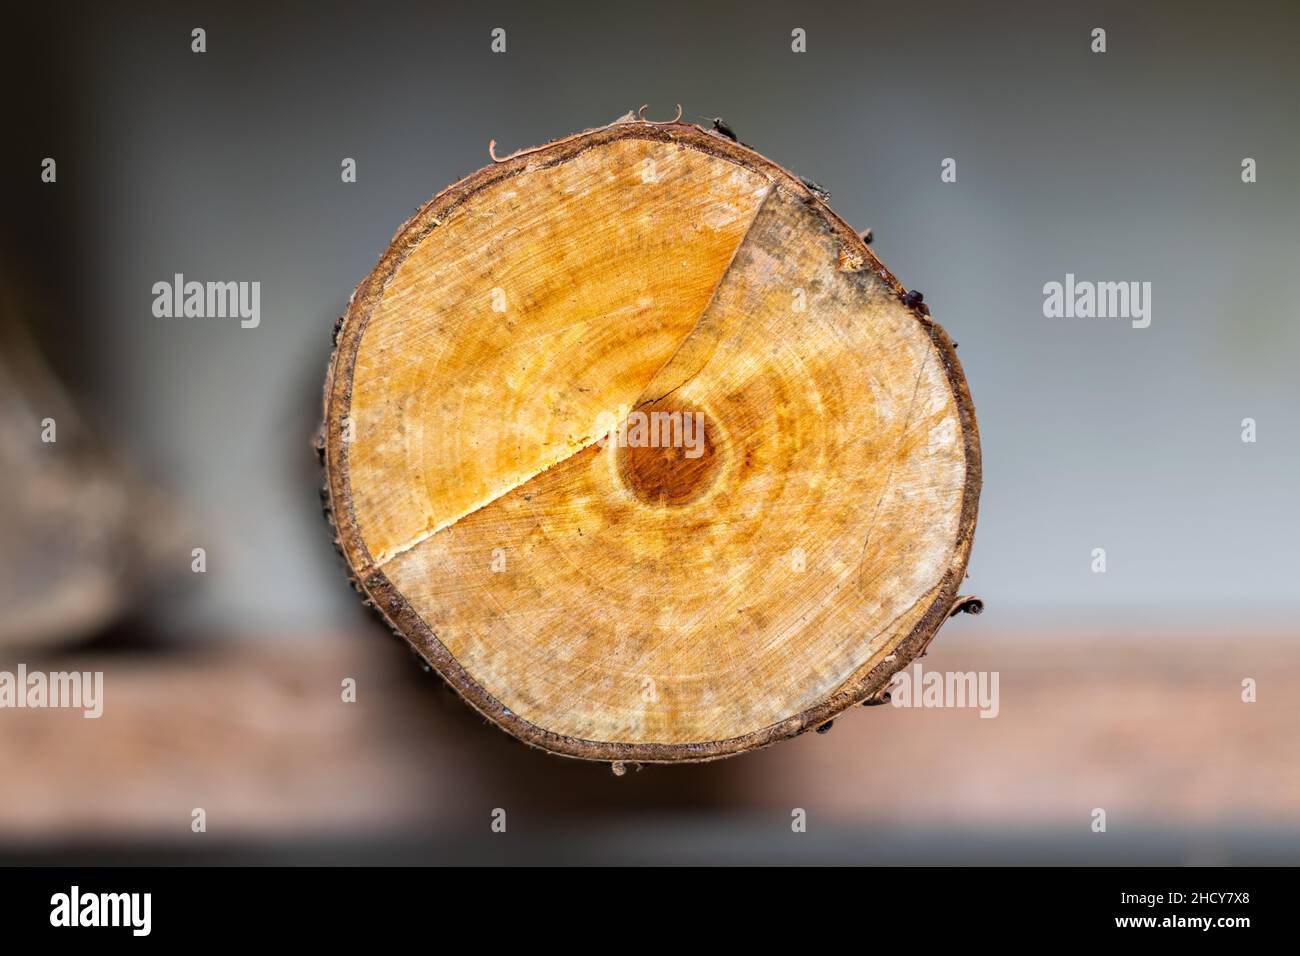 Árbol de ciruela cortada, anillos de árbol después del corte. Los años del árbol se pueden ver en los anillos circulares. Foto de stock